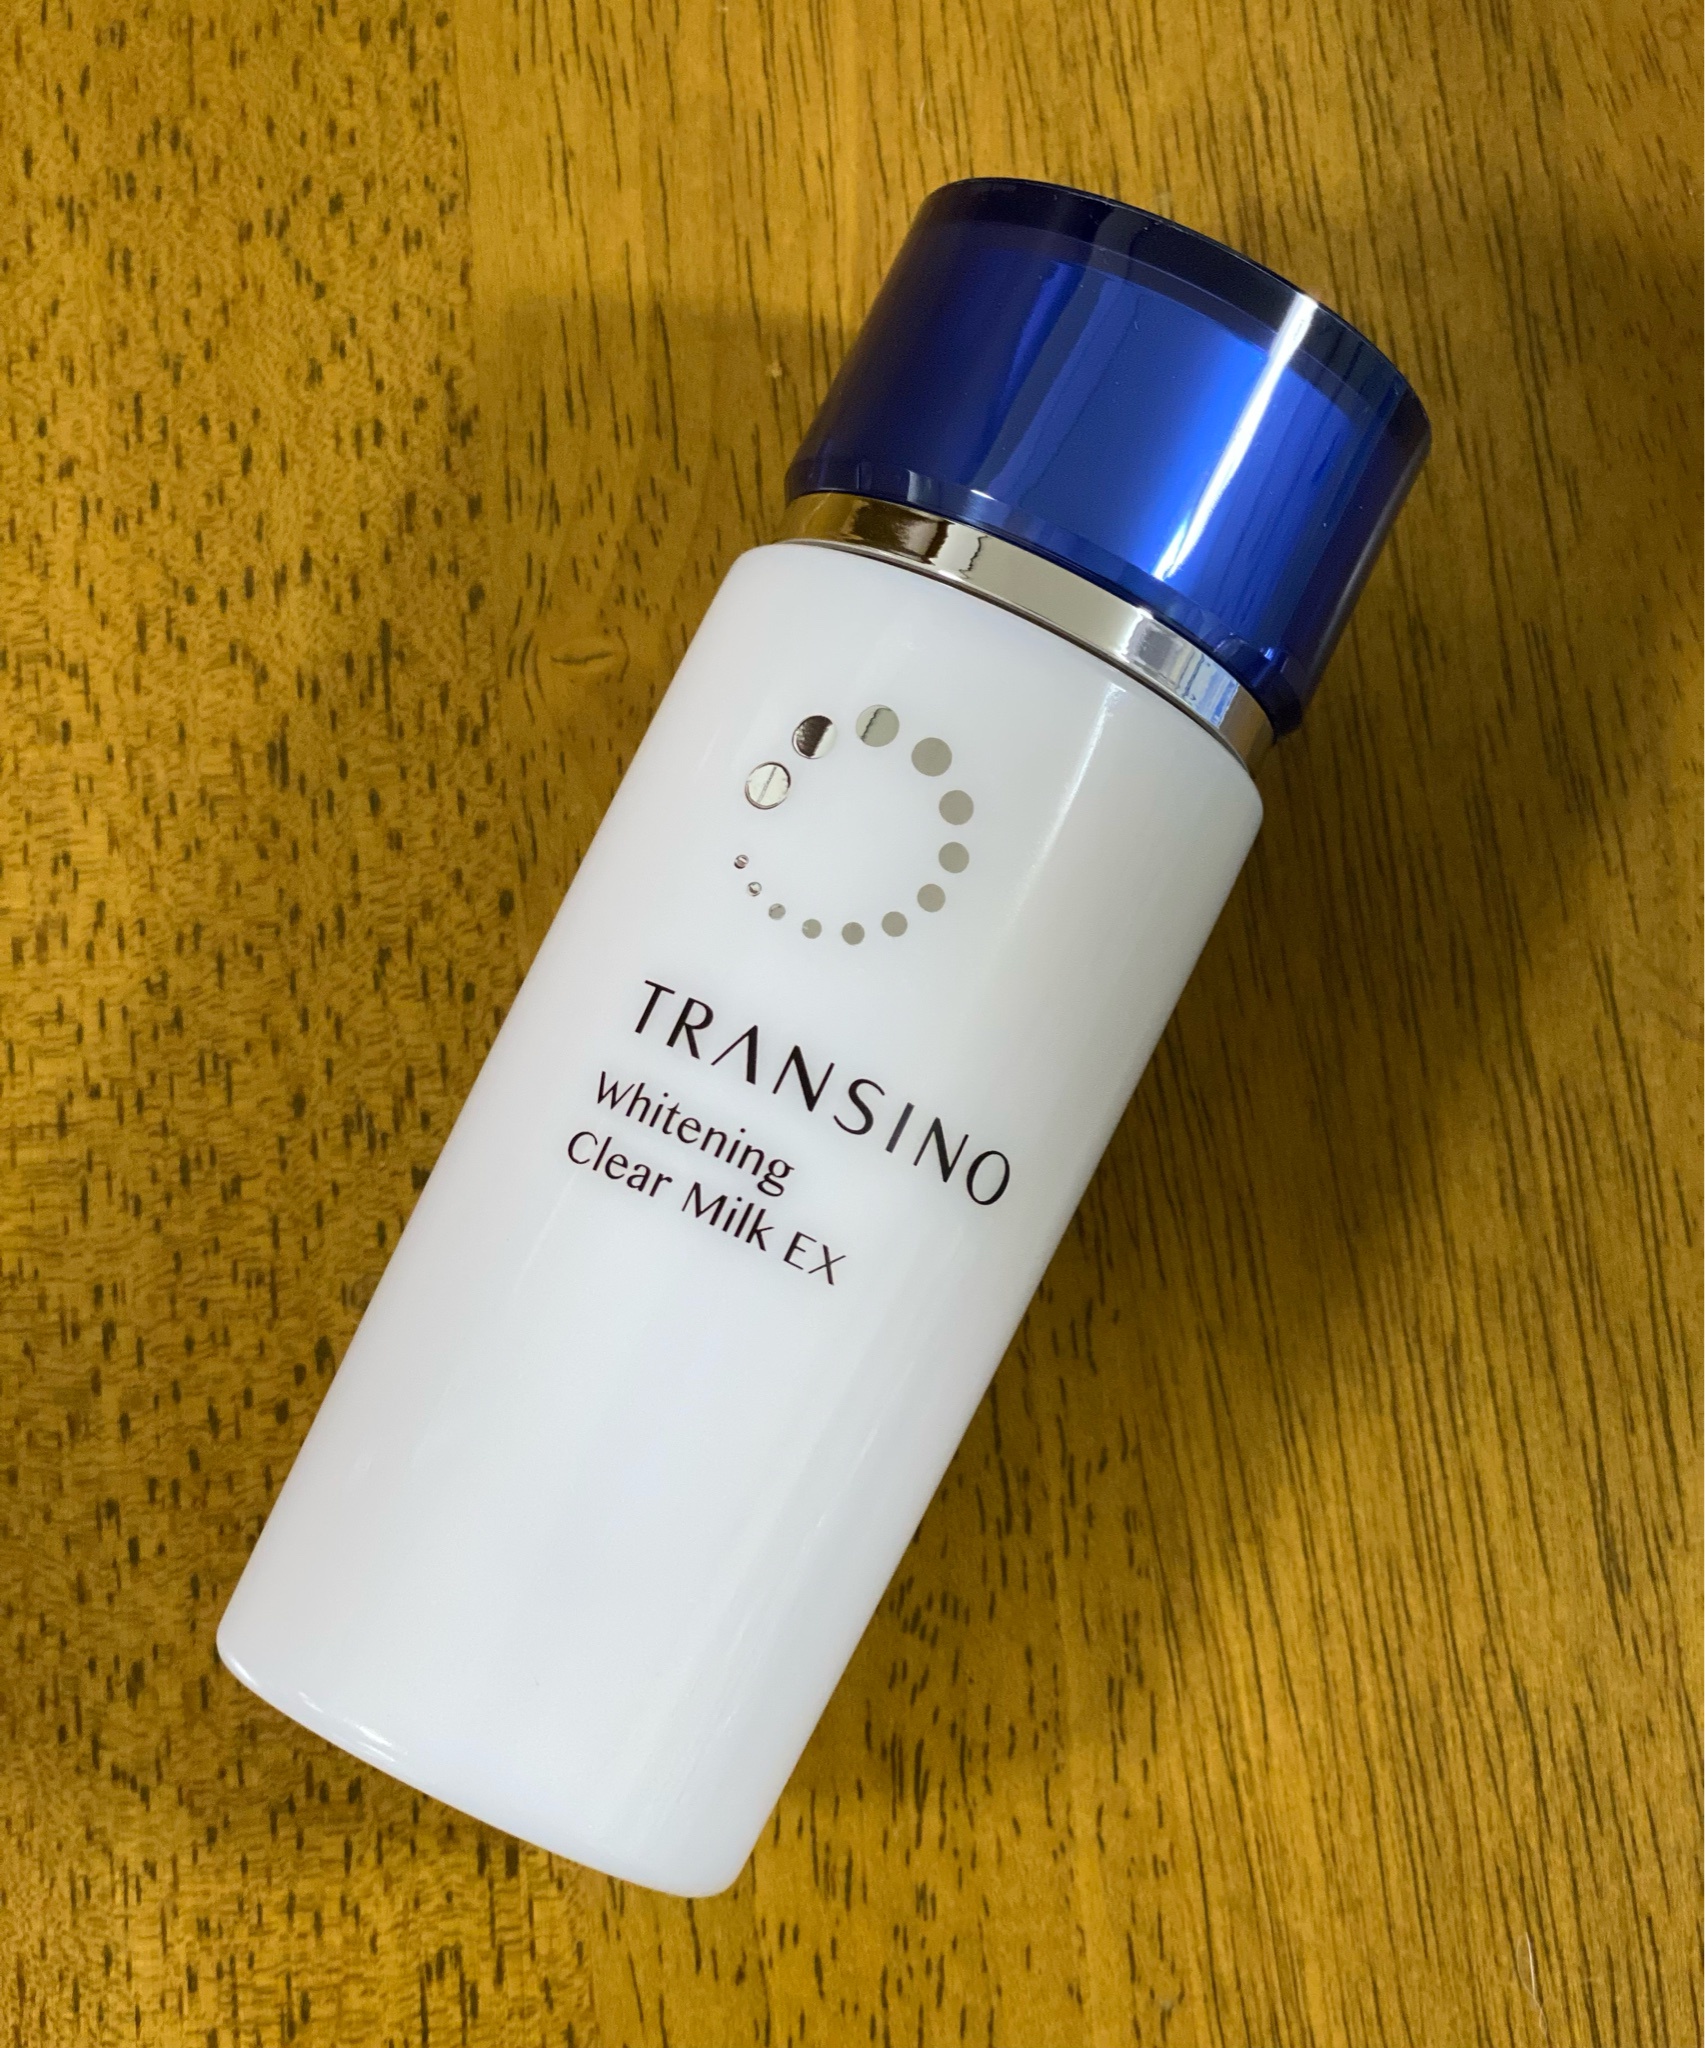 トランシーノ 薬用ホワイトニングクリアミルクEX(100ml)